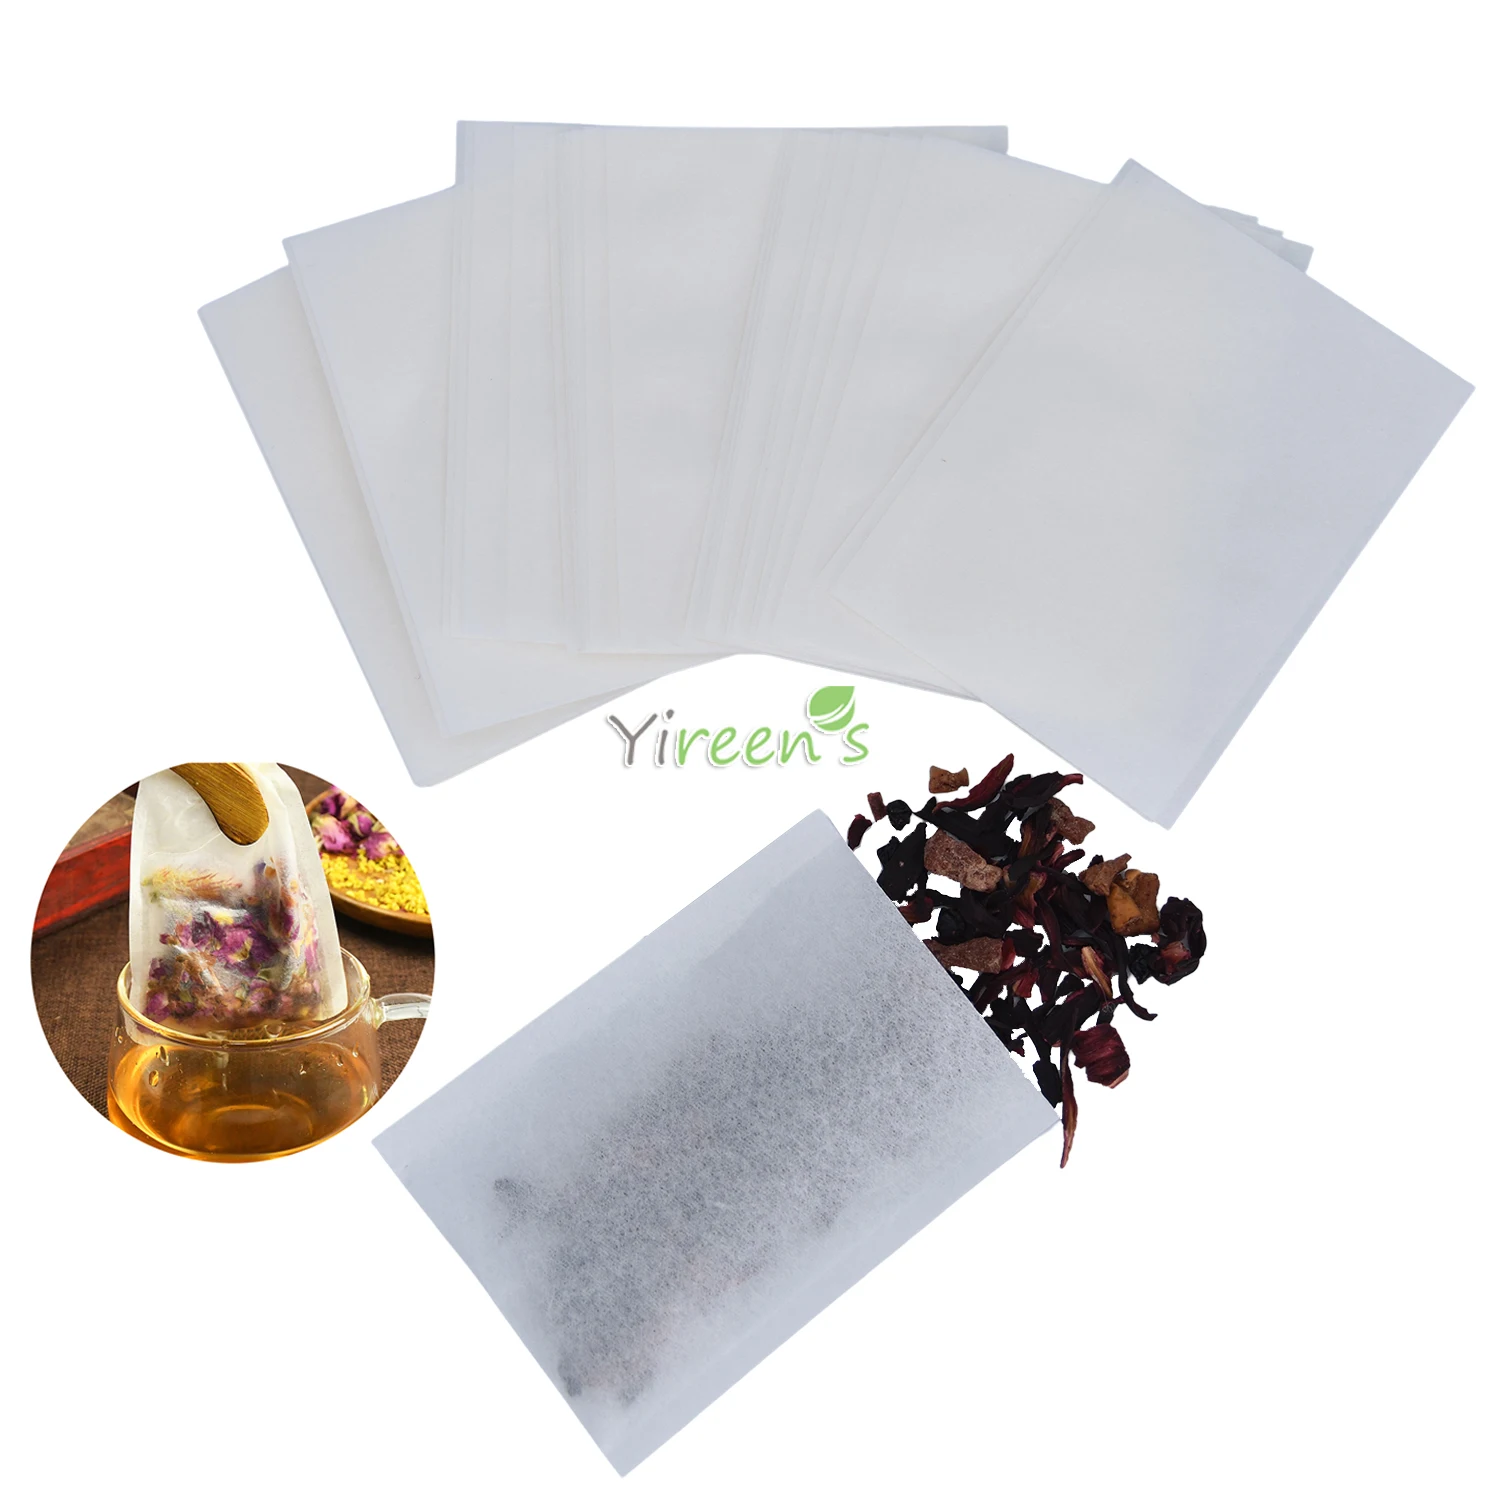 100 0 stücke 100X120mm Einweg Wärme Abdichtung Lebensmittel Grade Filter Papier Tee Taschen, für Kaffee Pulver/Salz Bad/Carbon Paket